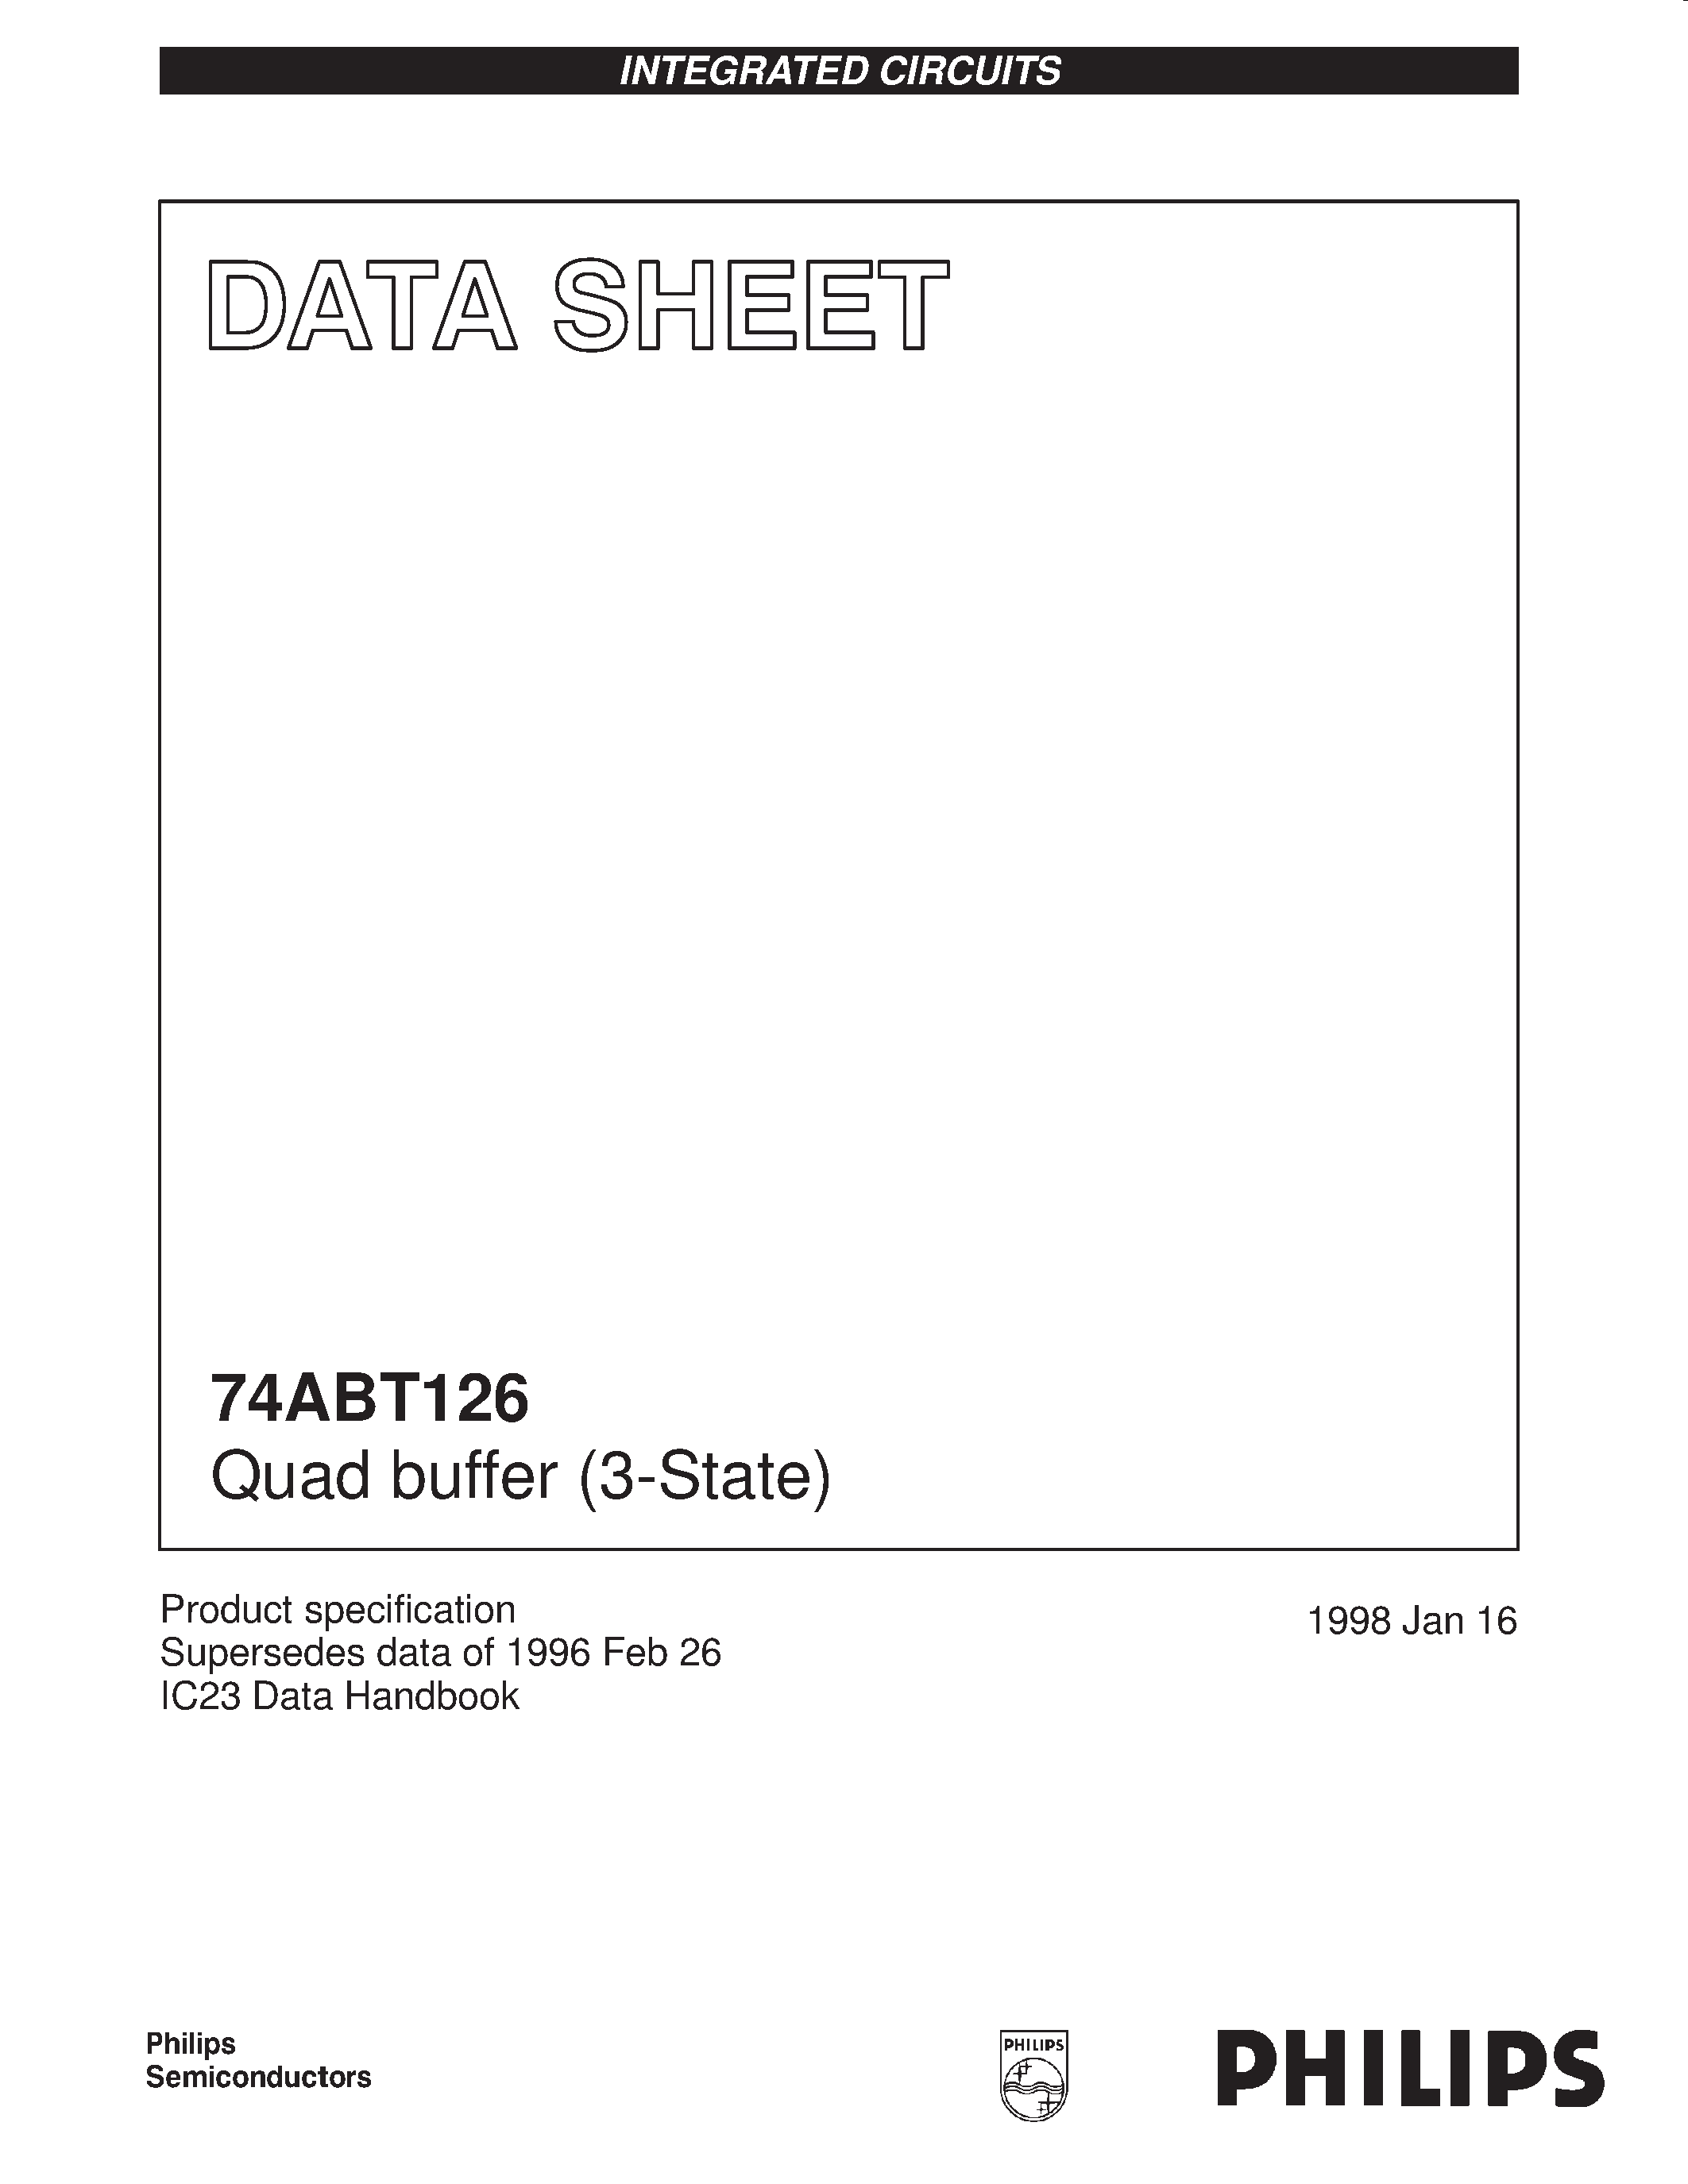 Даташит 74ABT126D - Quad buffer 3-State страница 1